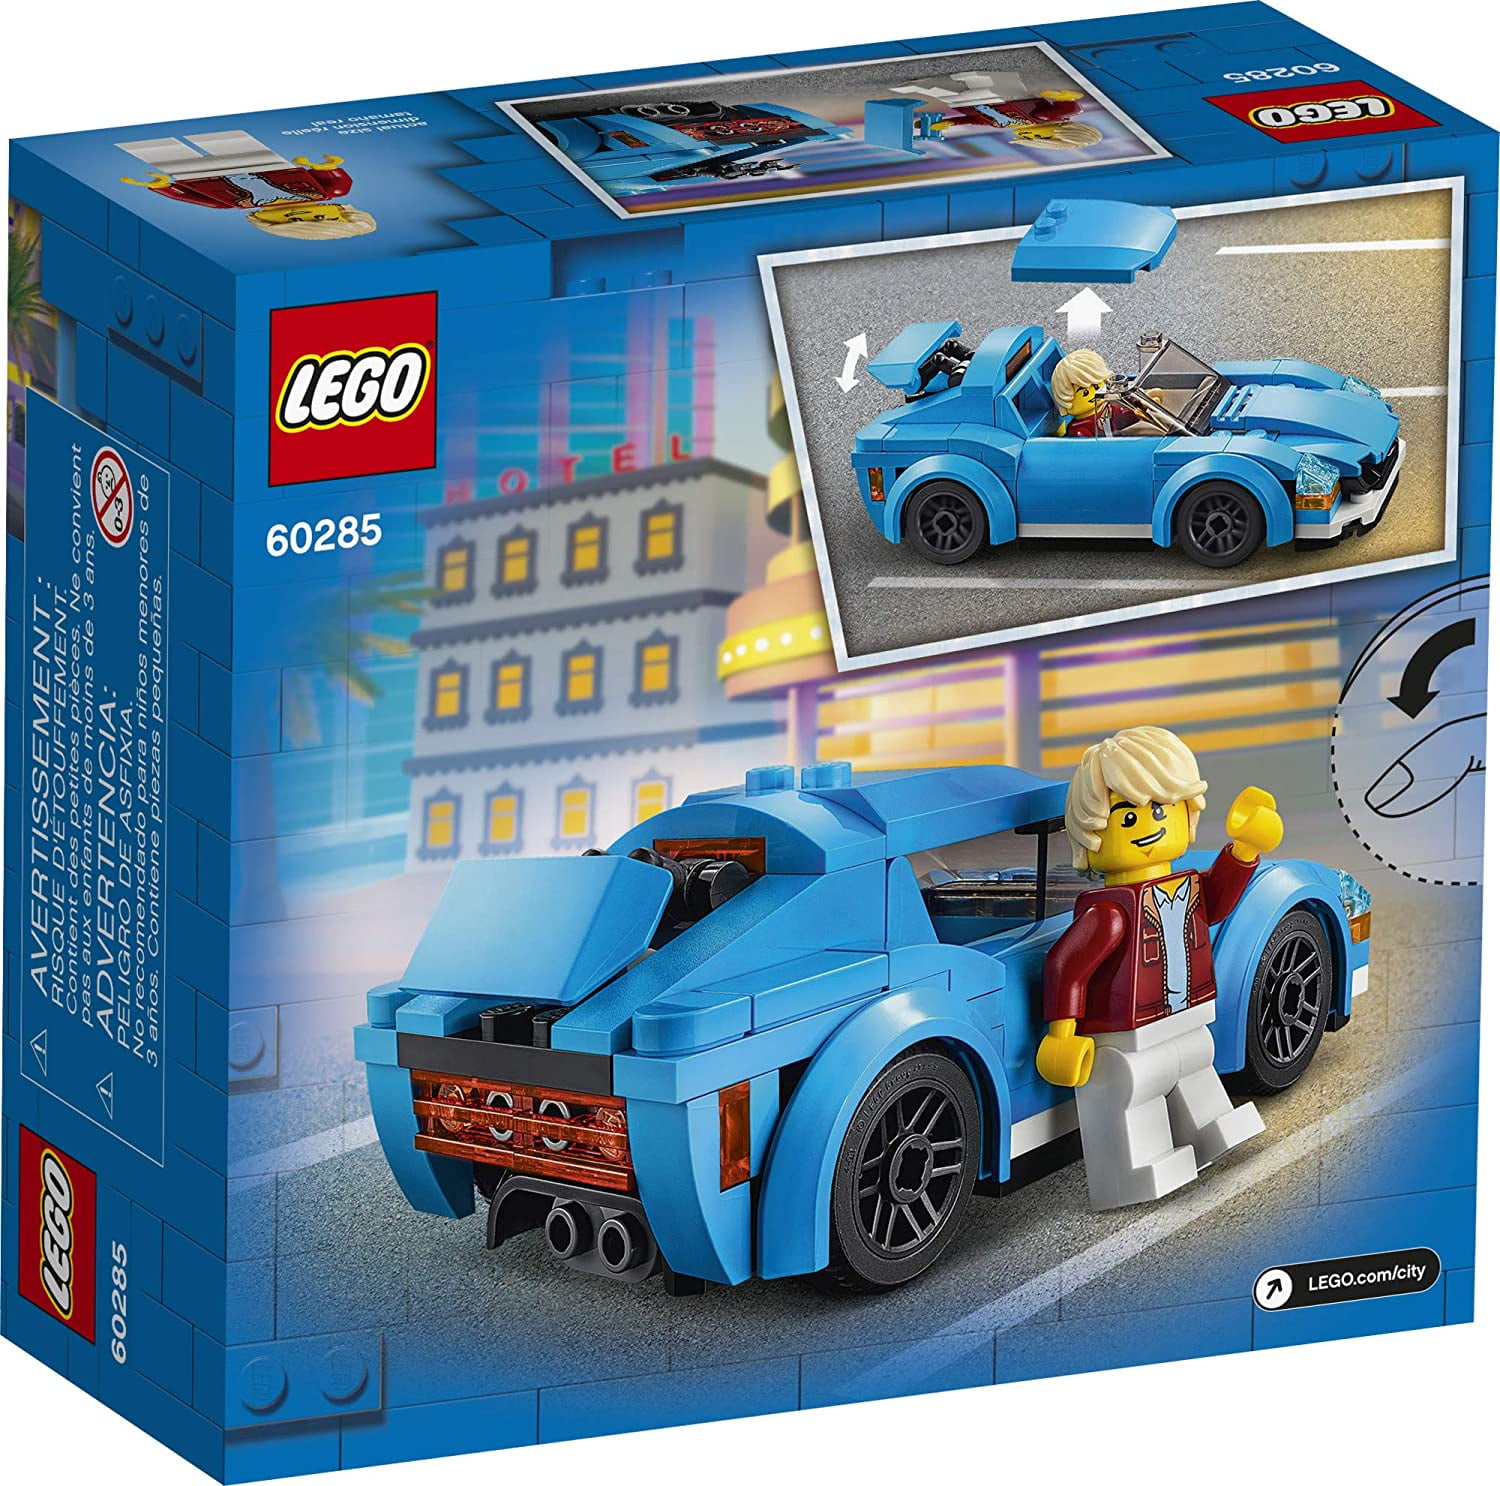 NEW 47pcs LEGO 30349 Polybag LEGO CITY Blue Sports Car 